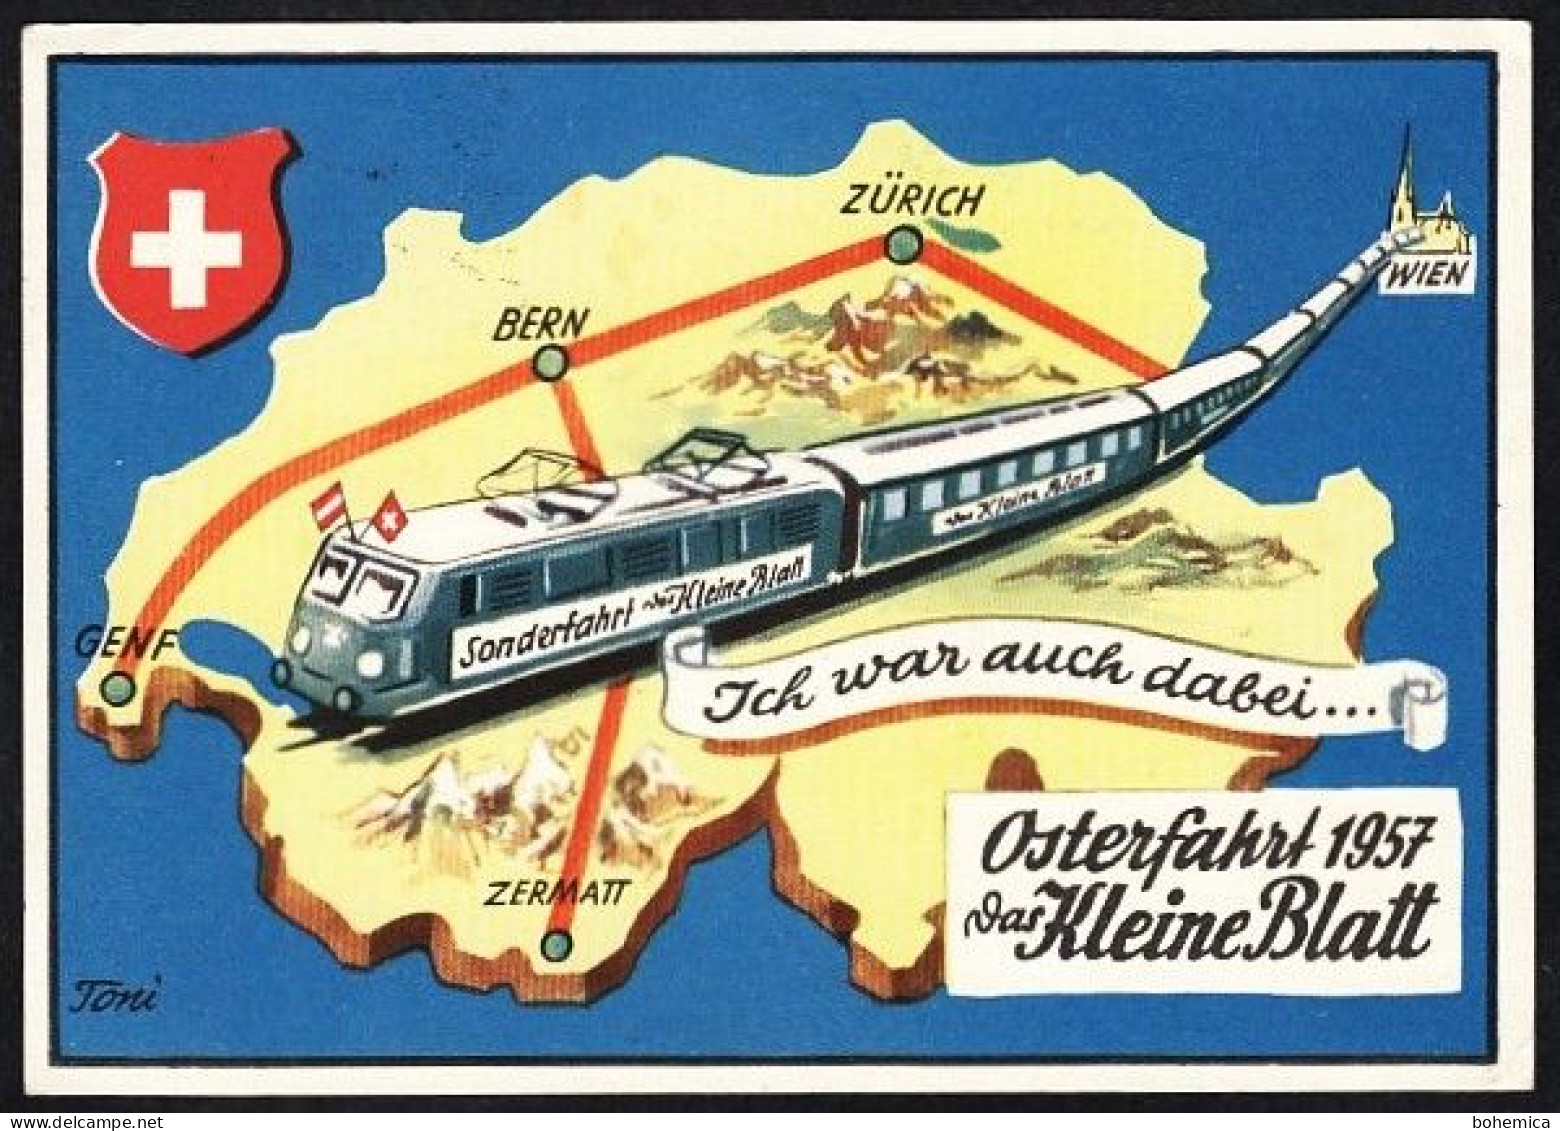 WERBUNG EISENBAHN ÖSTERREICH SCHWEIZ OSTERFAHRT 1957 DAS KLEINE BLATT GRAPHIK - Publicité